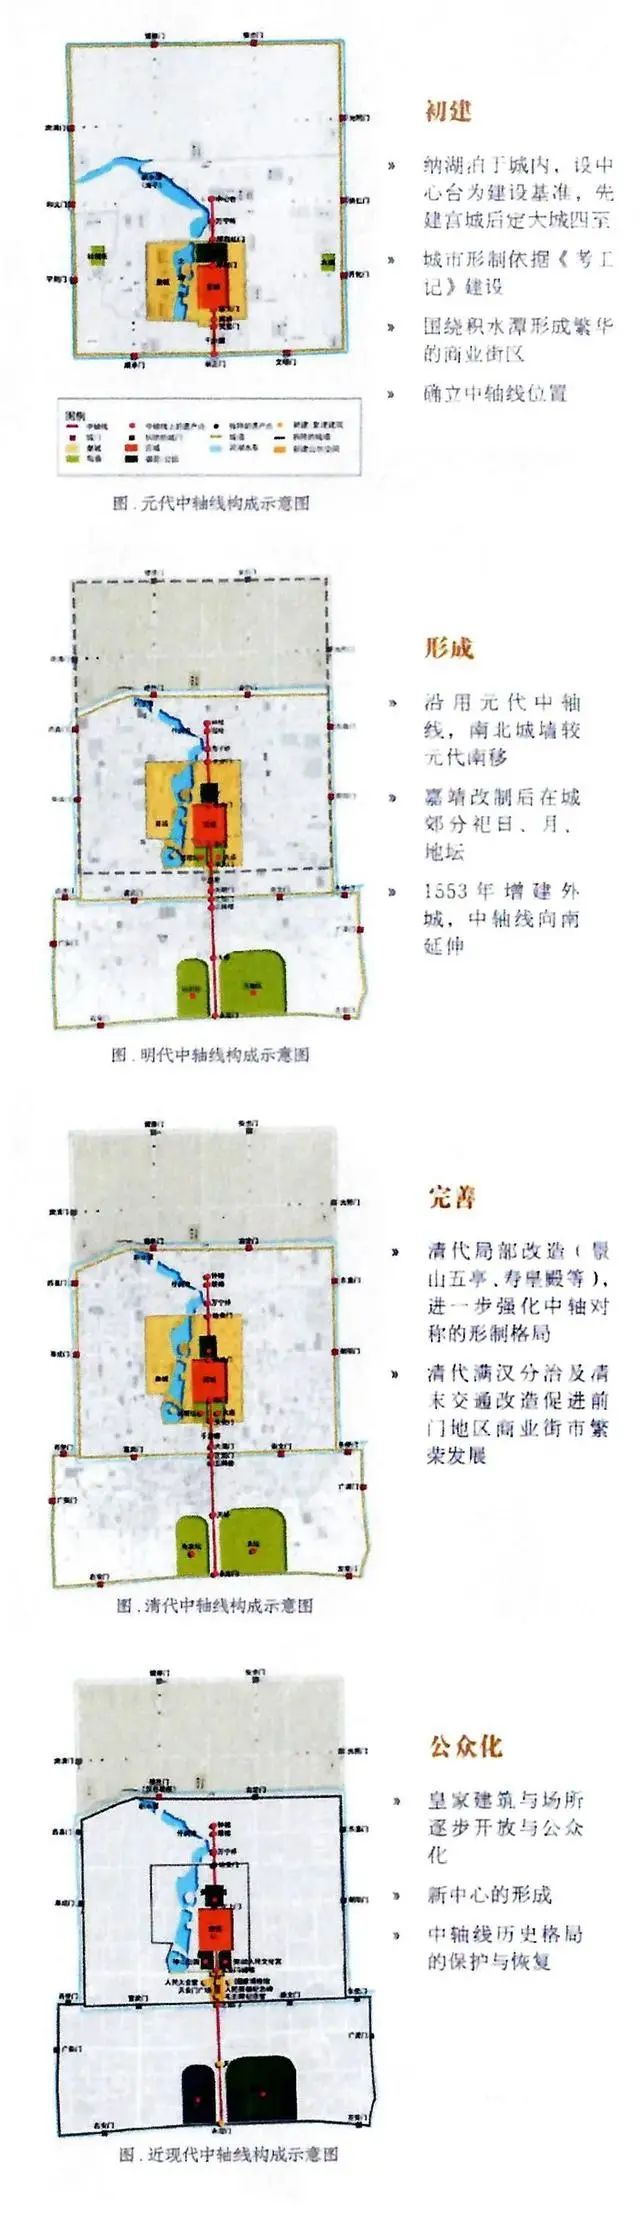 北京中轴线是由一系列建筑群,历史地标,历史道路,桥梁及遗址共同